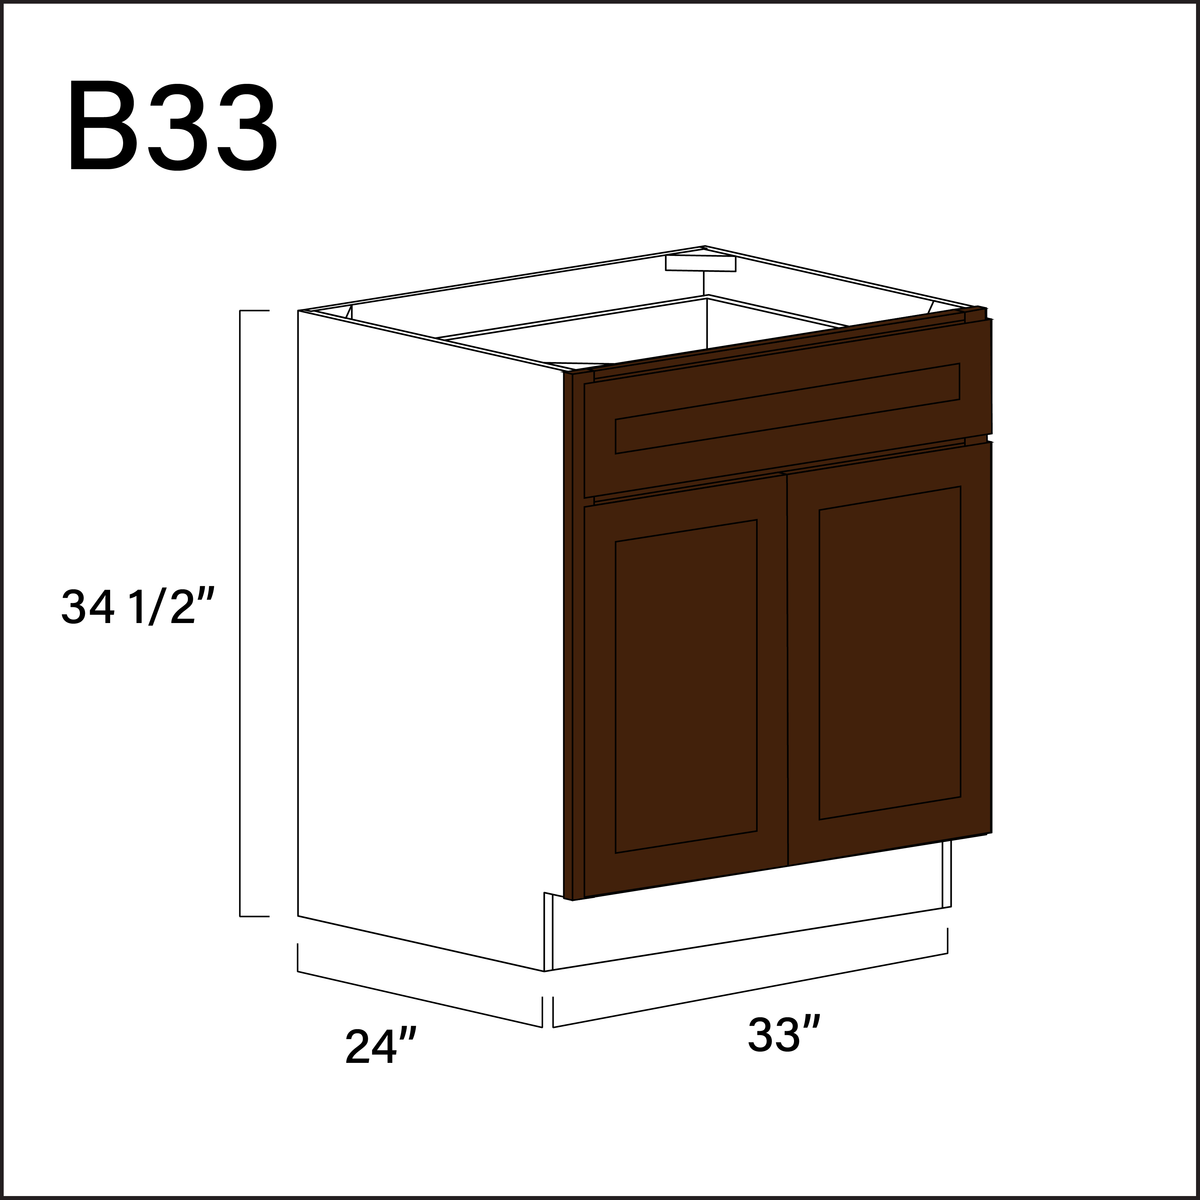 Espresso Shaker 1 Drawer 2 Door Kitchen Base Cabinet - 33" W x 34.5" H x 24" D